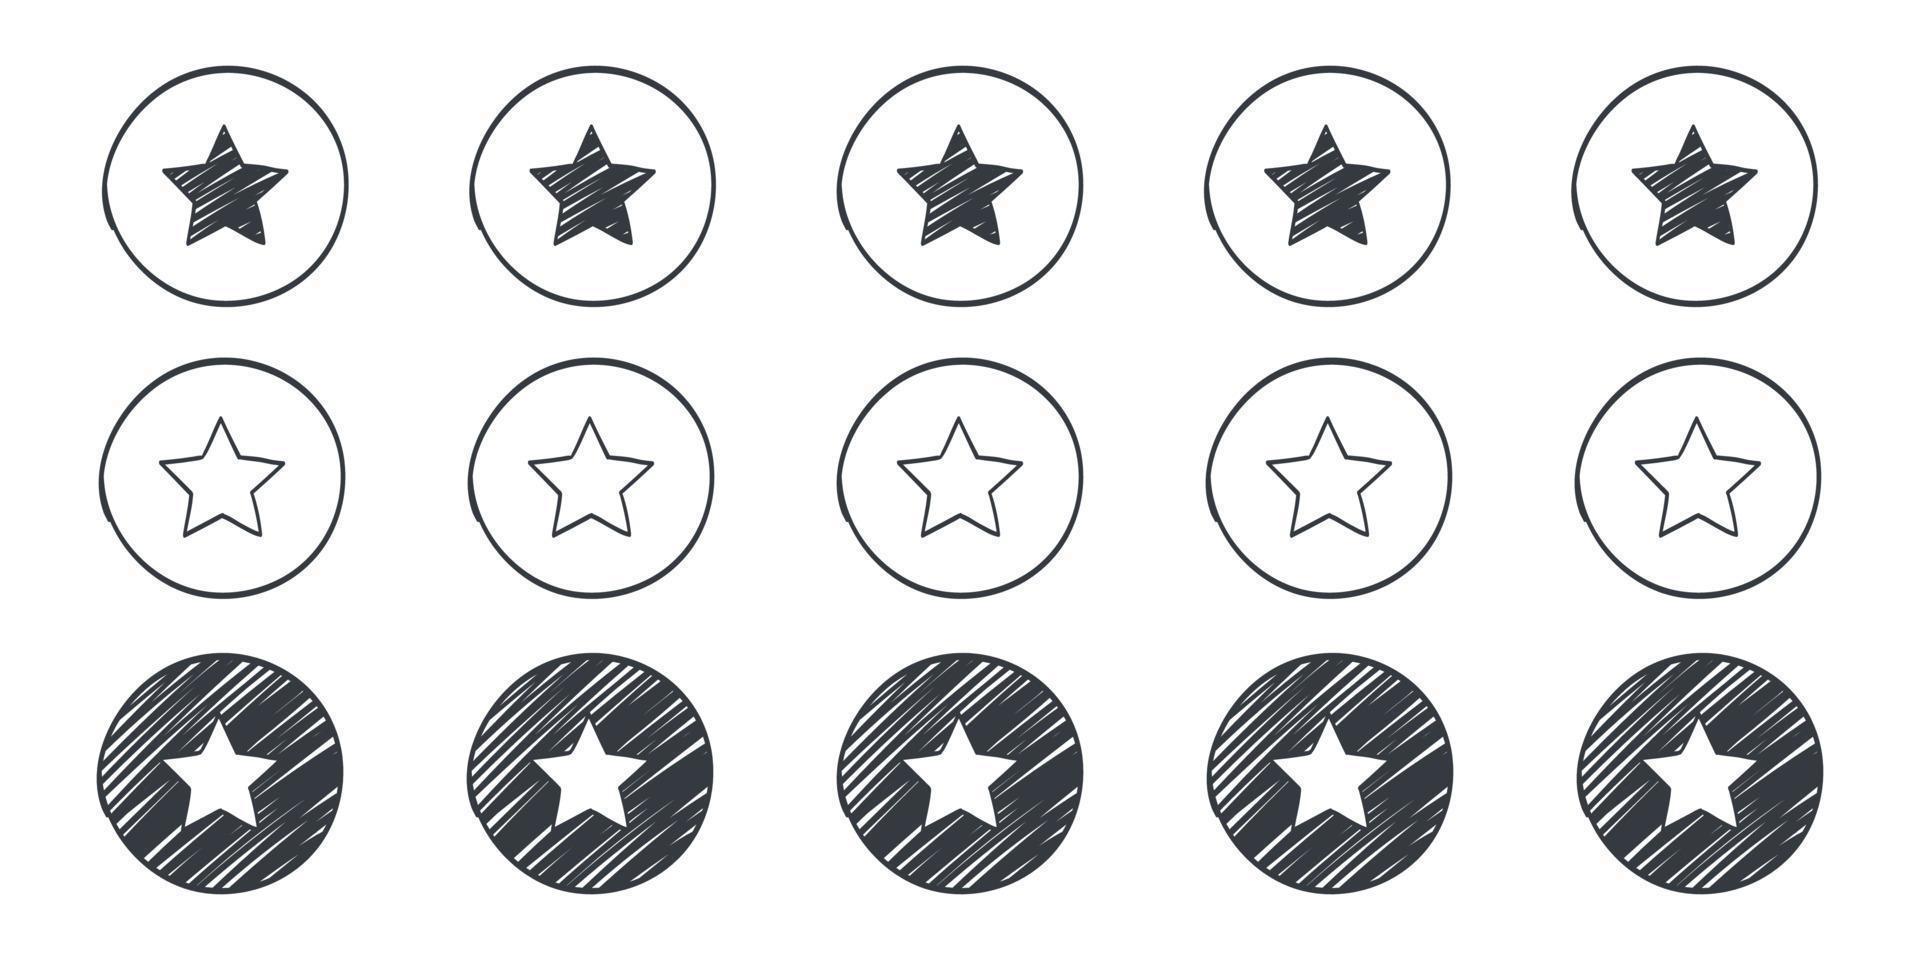 signes d'évaluation de la qualité. icônes d'étoiles de doodle. icônes dessinées d'étoiles. illustration vectorielle vecteur